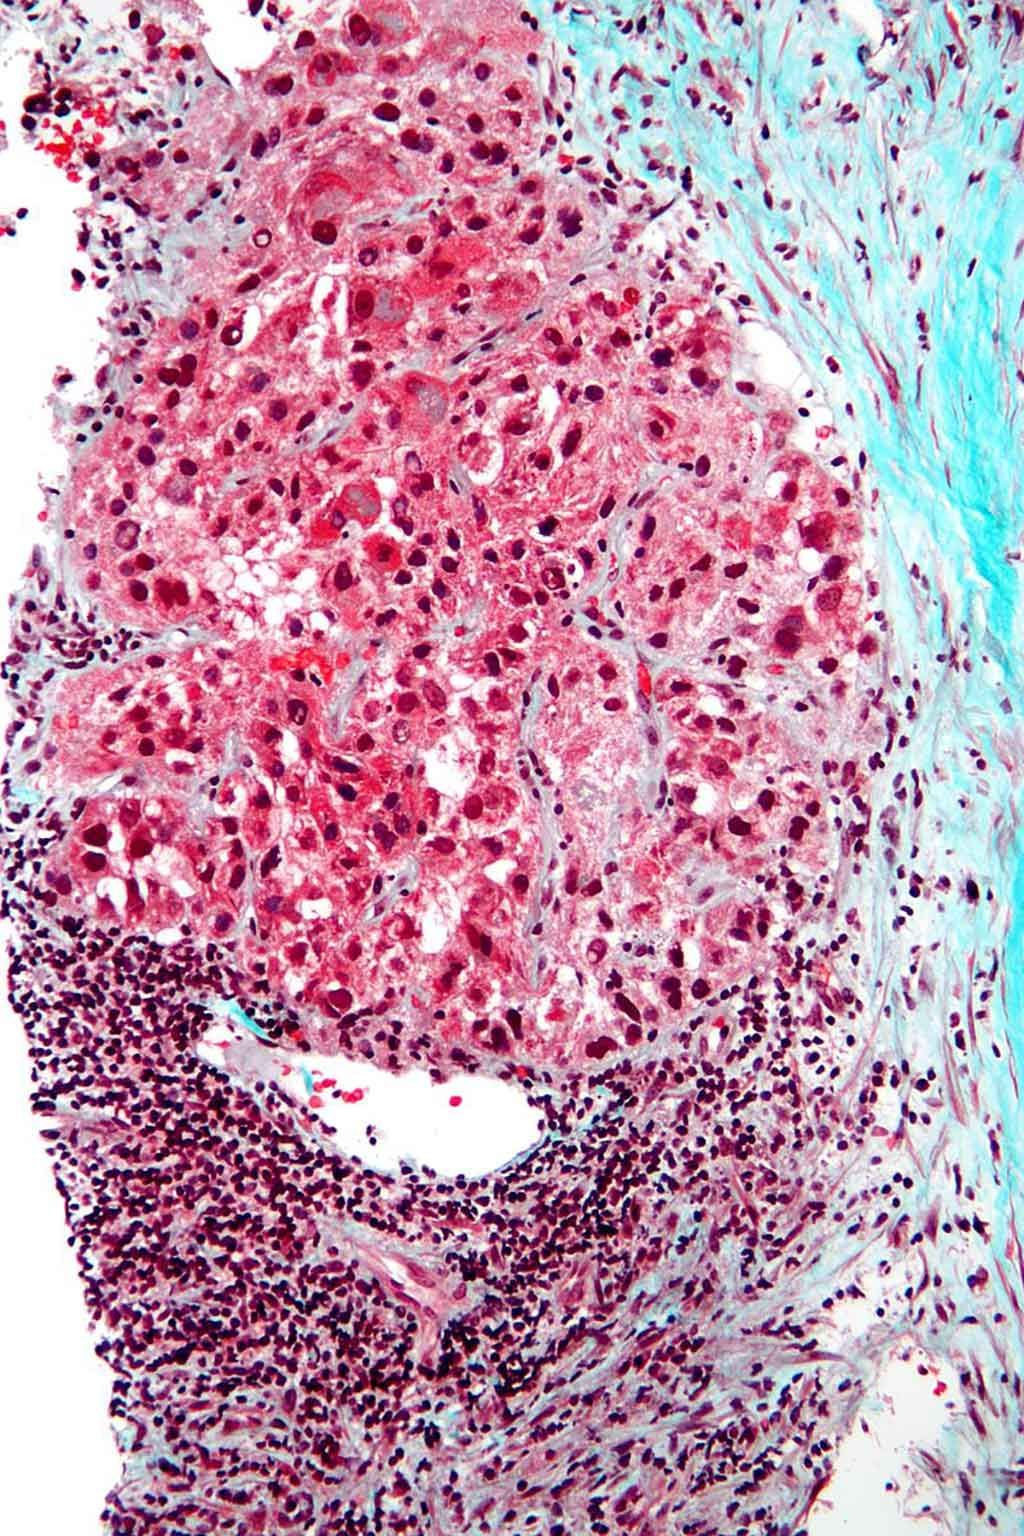 Imagen: Microfotografía del carcinoma hepatocelular (cáncer de hígado) (Fotografía cortesía de Wikimedia Commons)